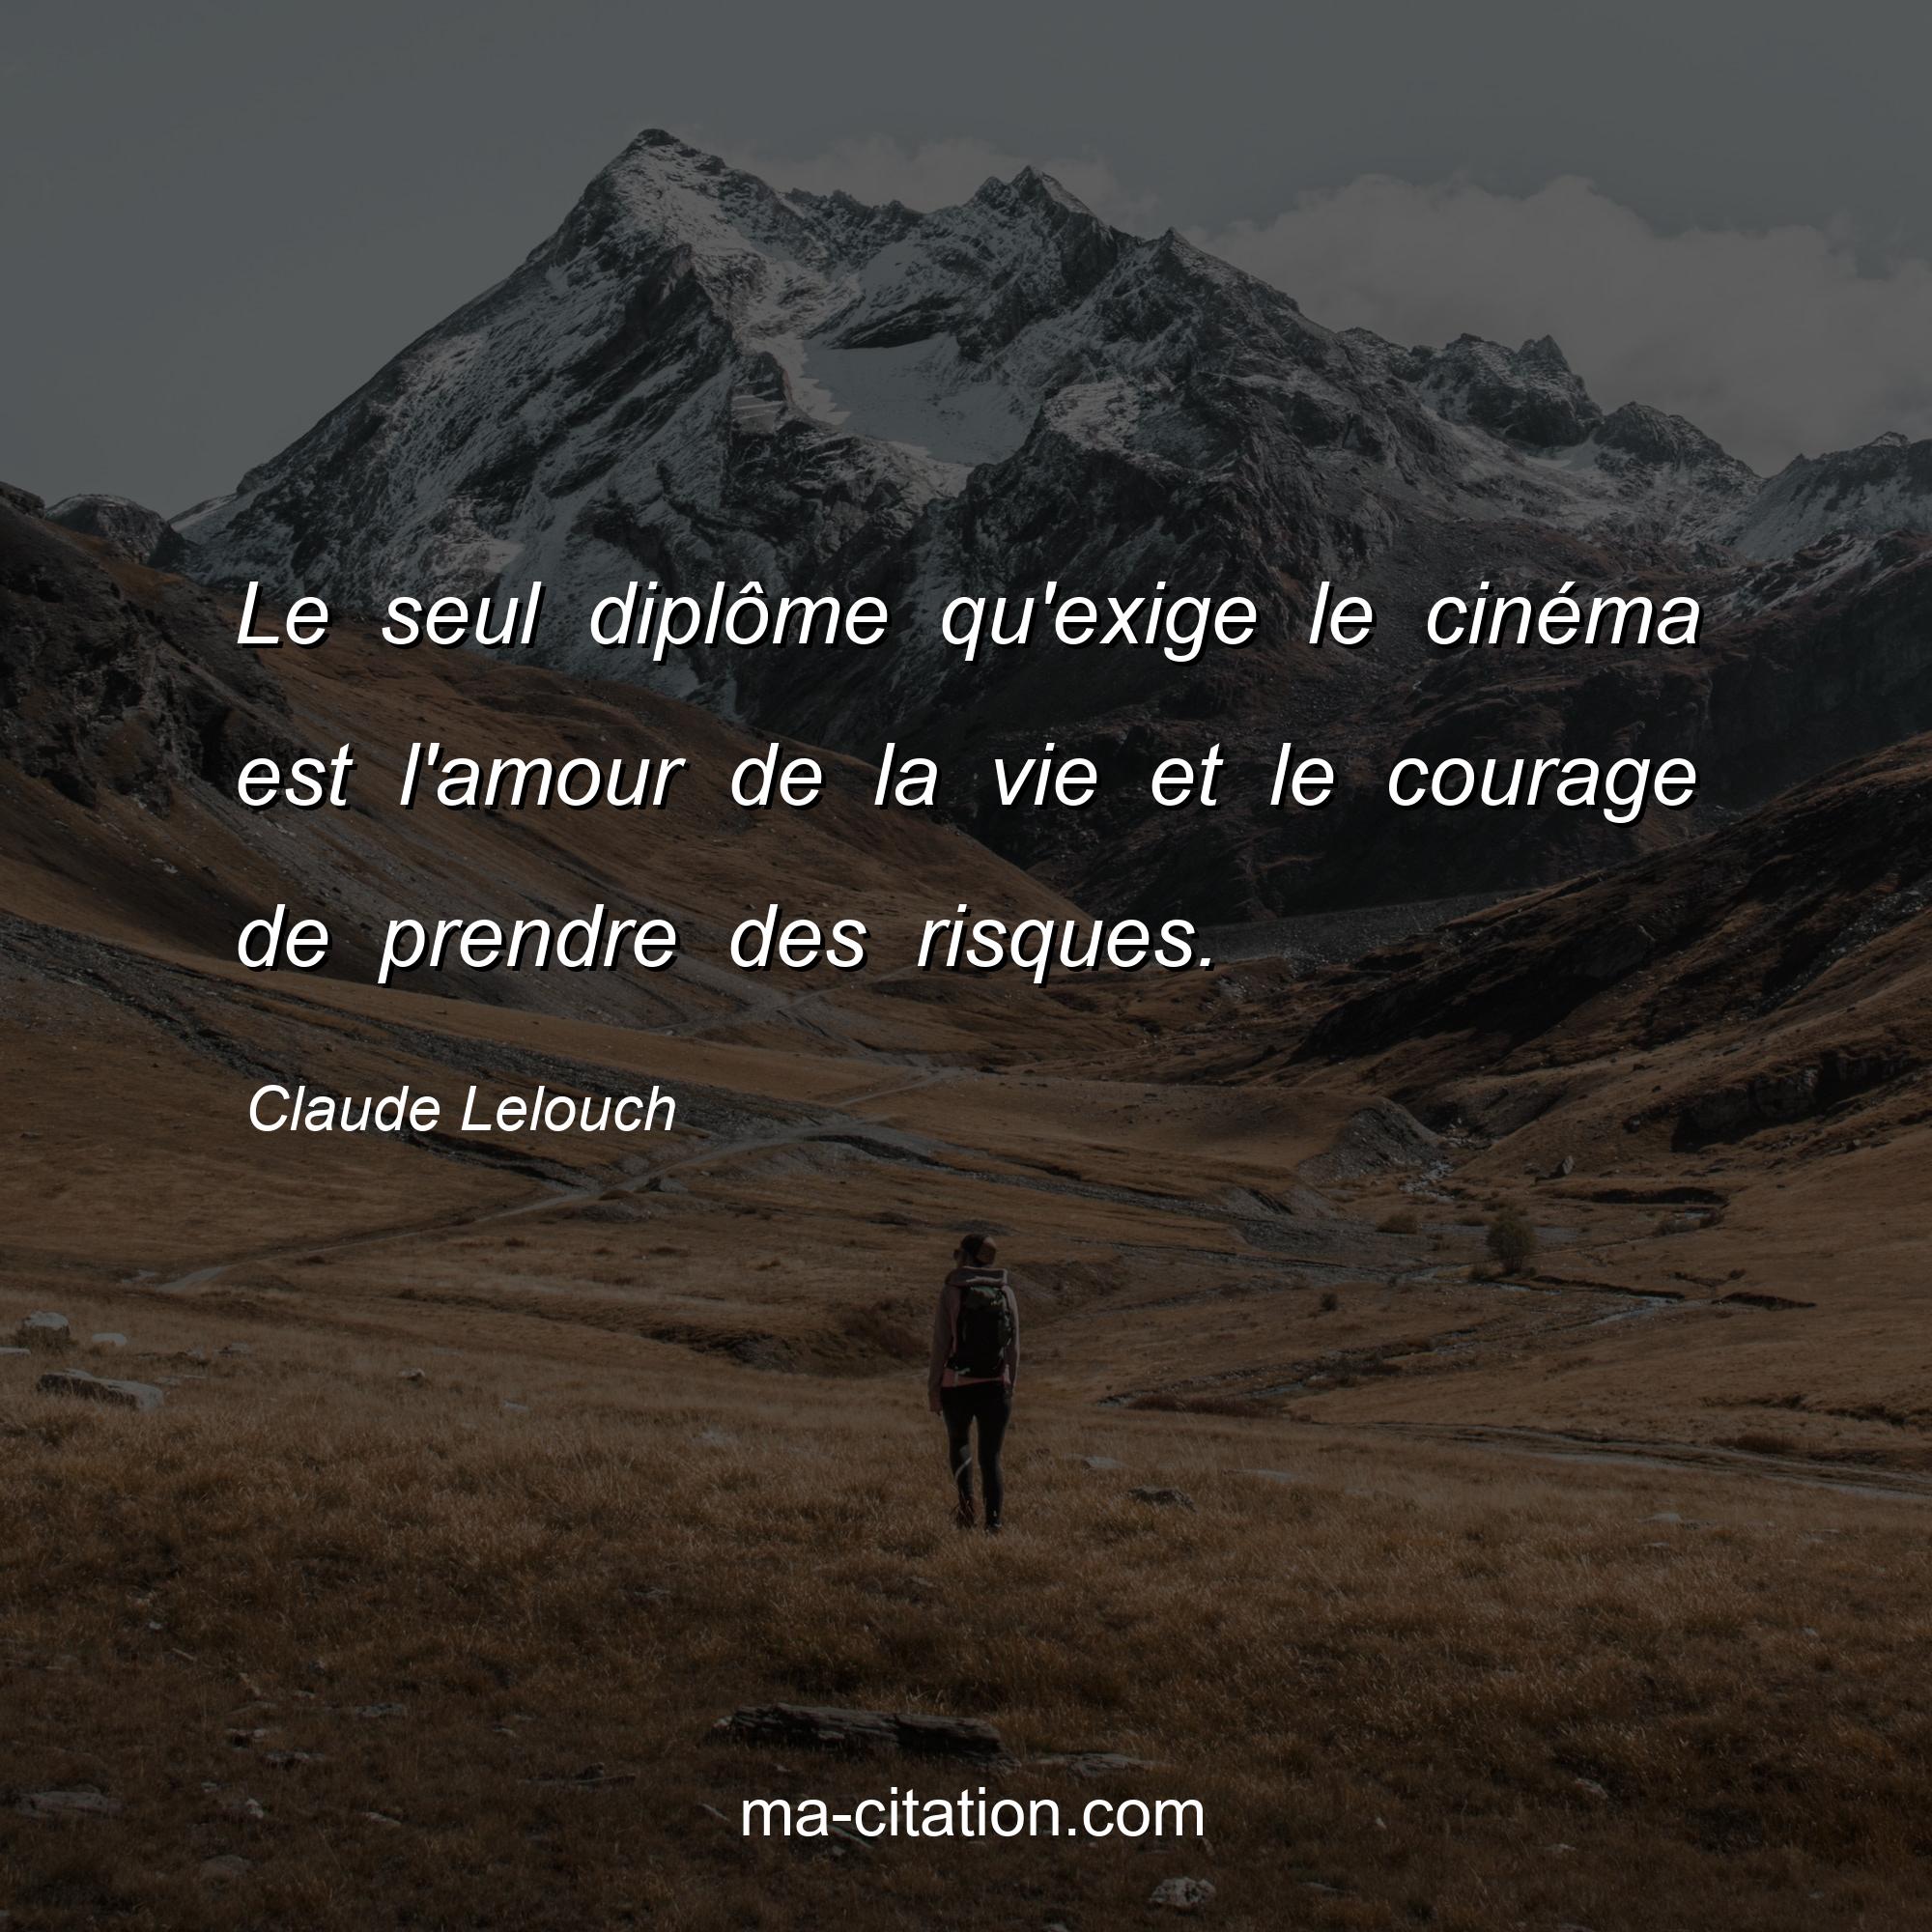 Claude Lelouch : Le seul diplôme qu'exige le cinéma est l'amour de la vie et le courage de prendre des risques.